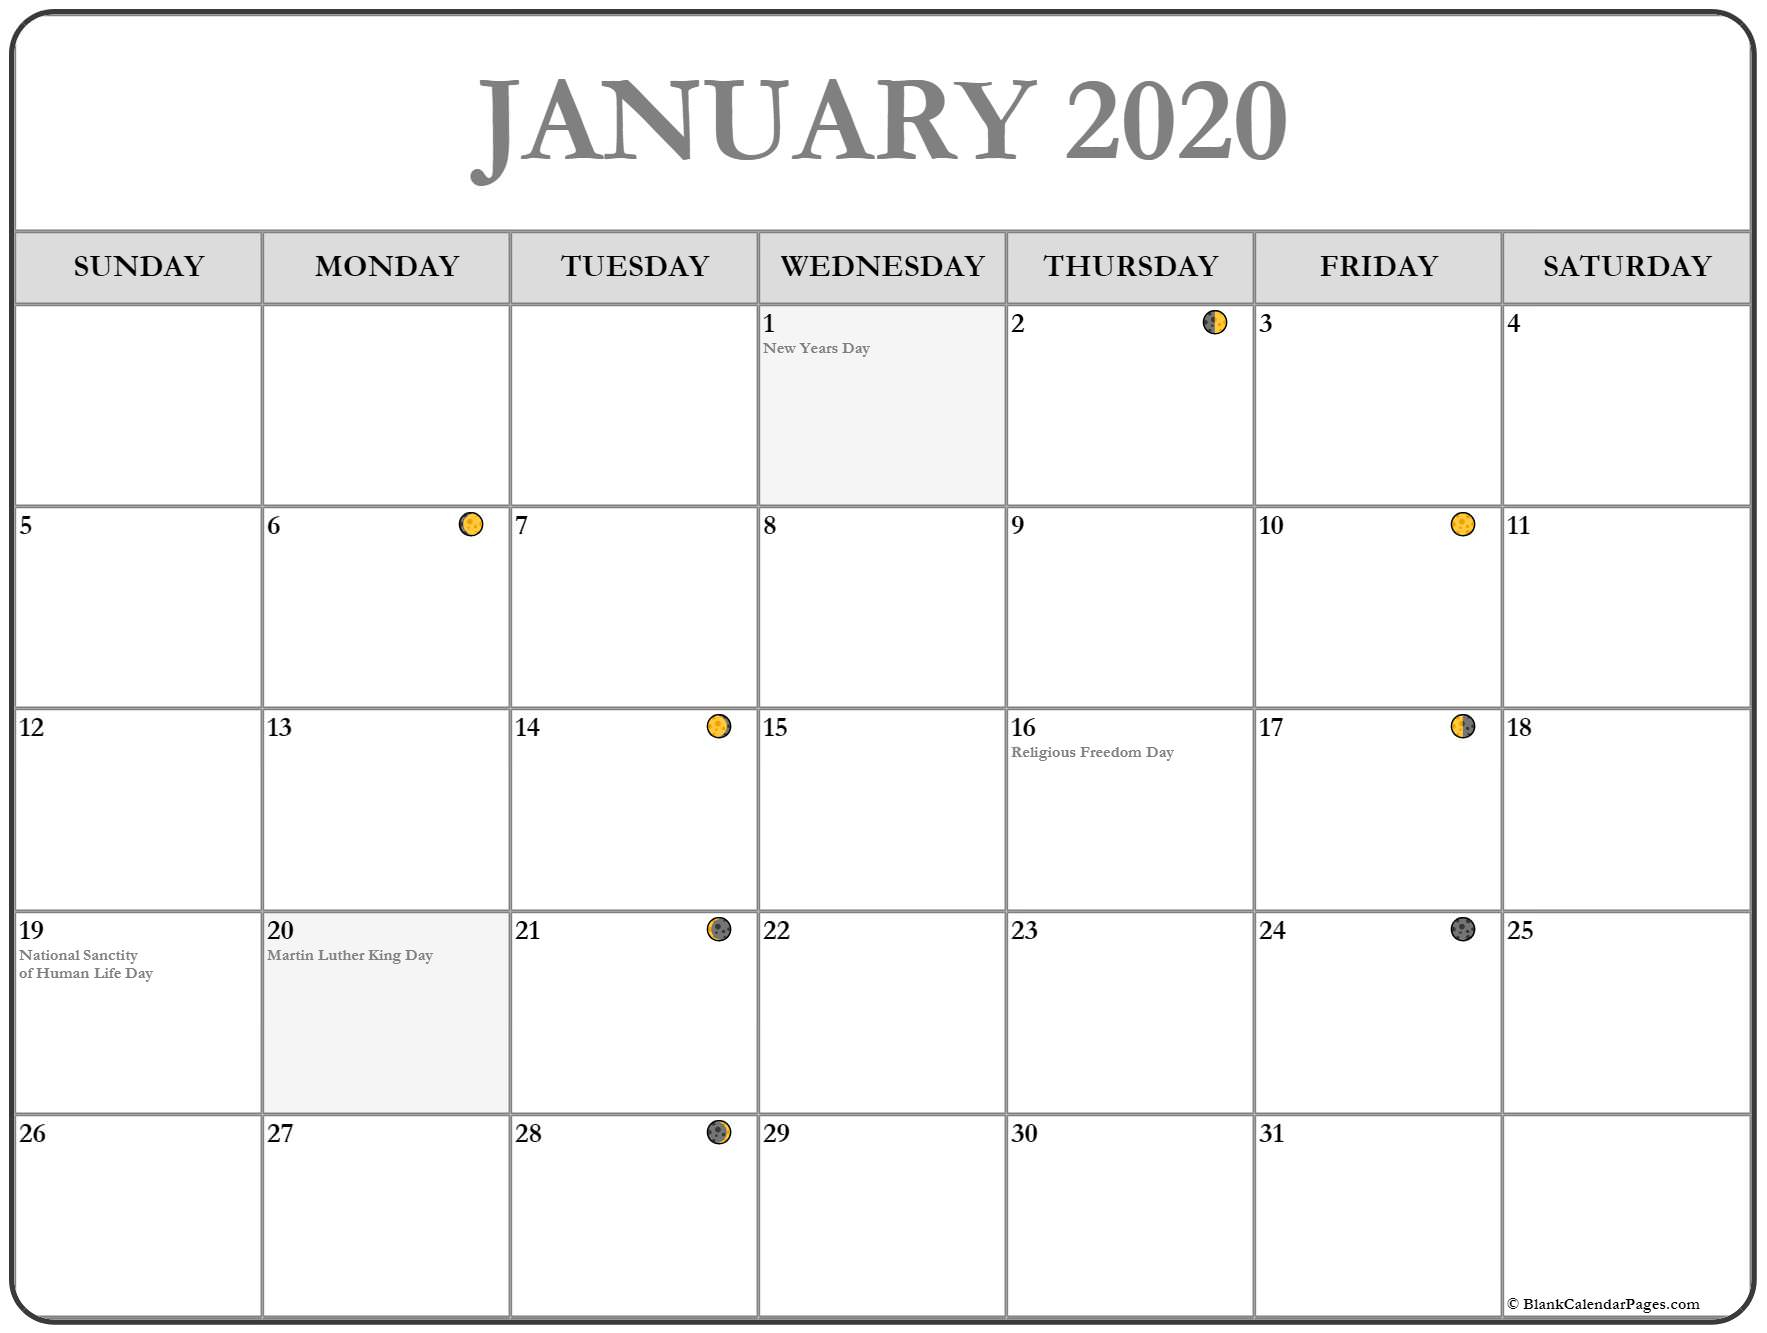 January 2020 Lunar Calendar | Moon Phase Calendar